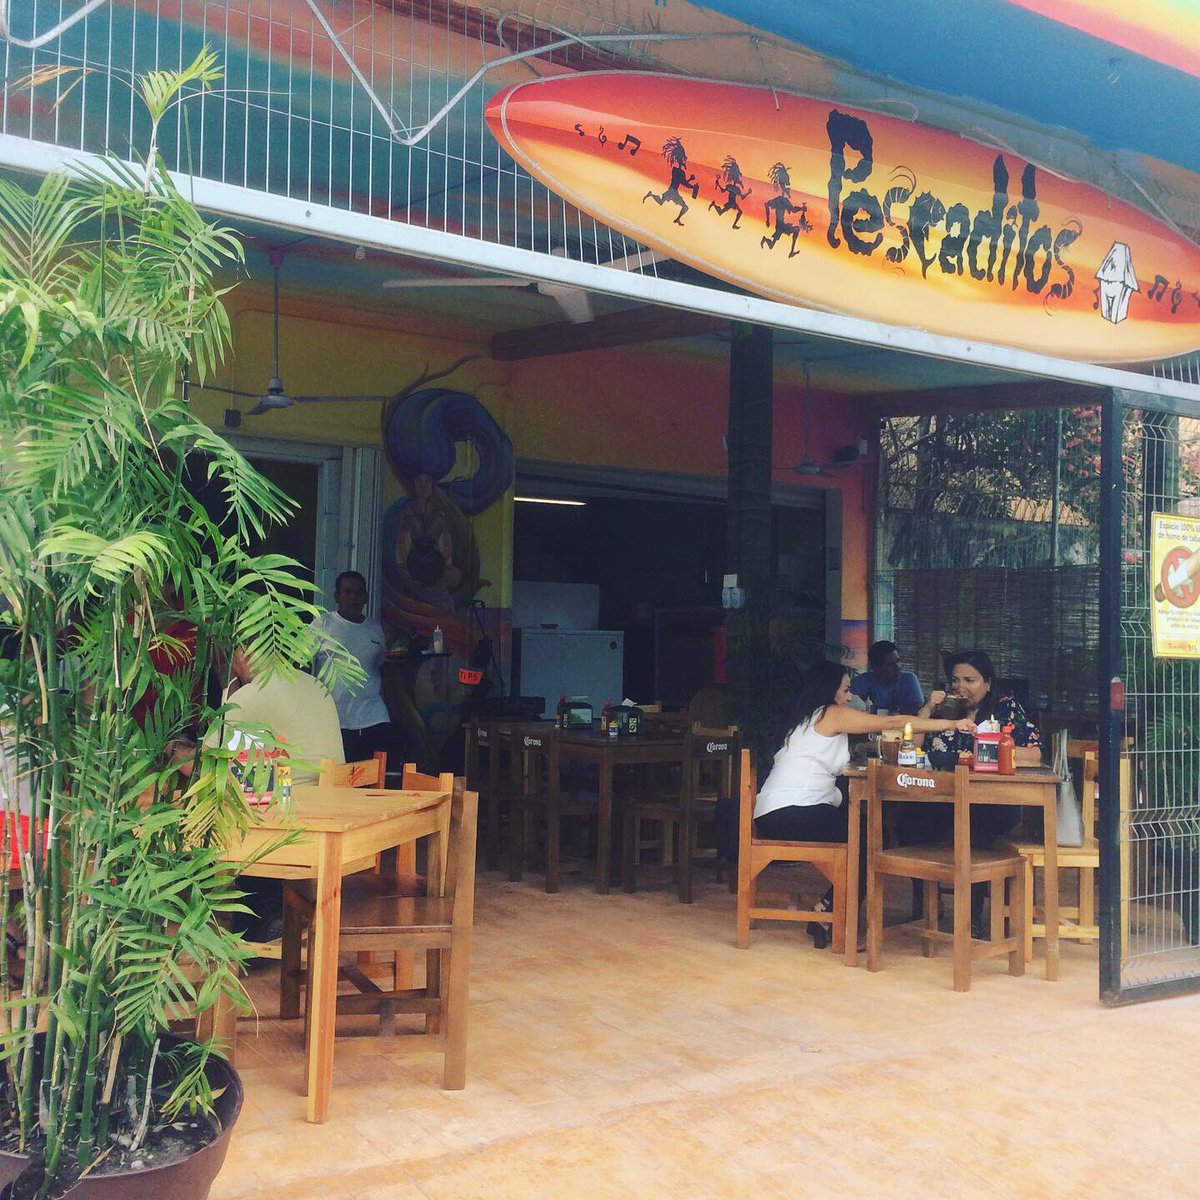 Pescaditos restaurant Cancun